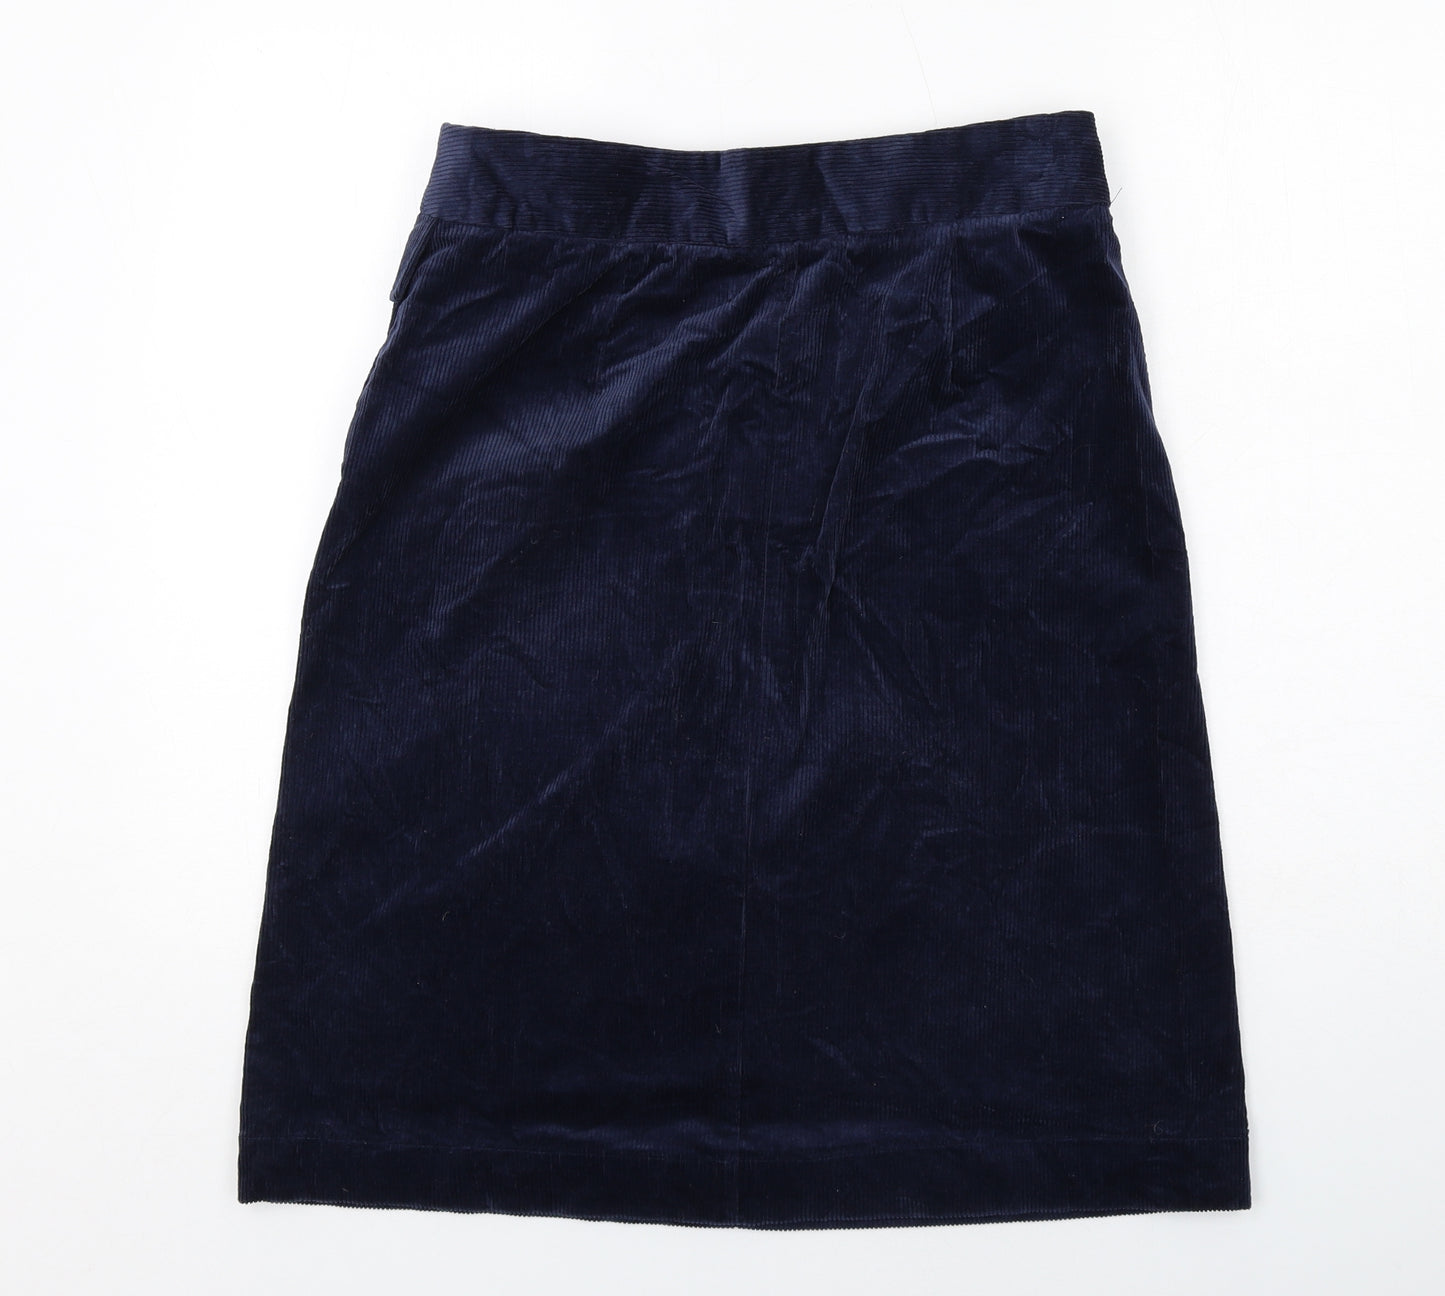 NEXT Womens Blue Cotton A-Line Skirt Size 12 Zip